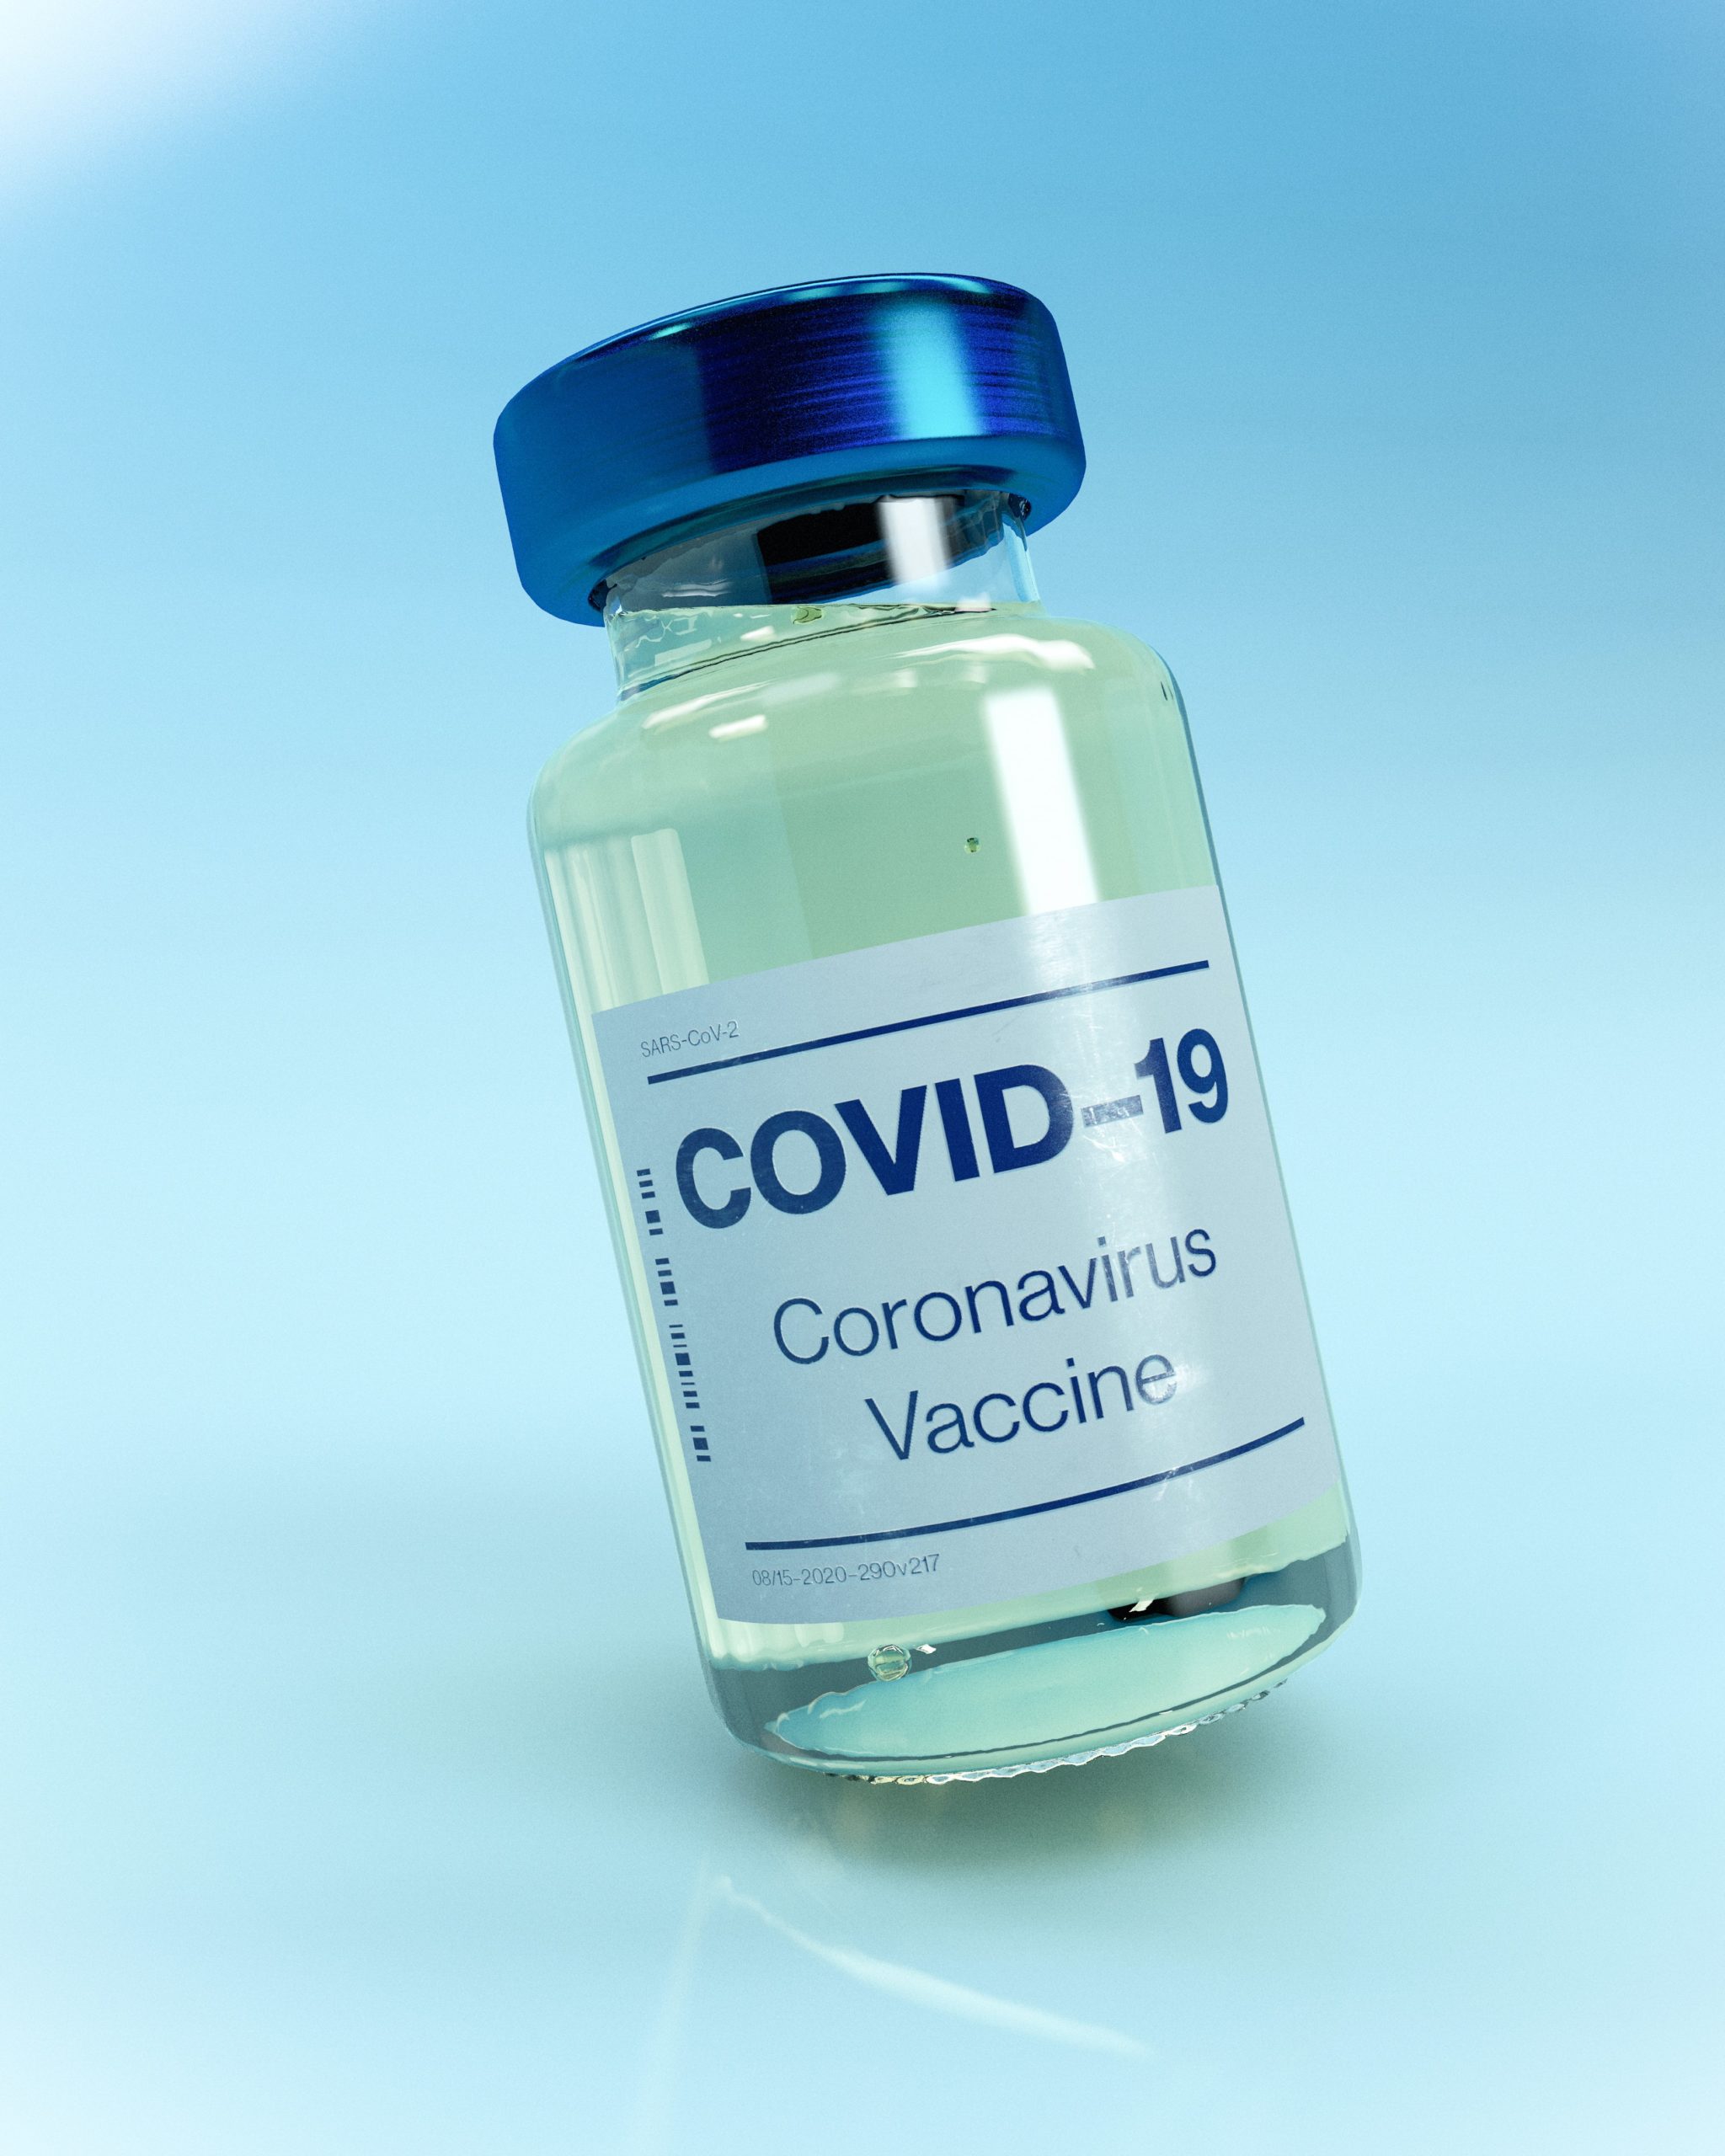 Sospendere i brevetti sui vaccini anti covid-19 non è la soluzione